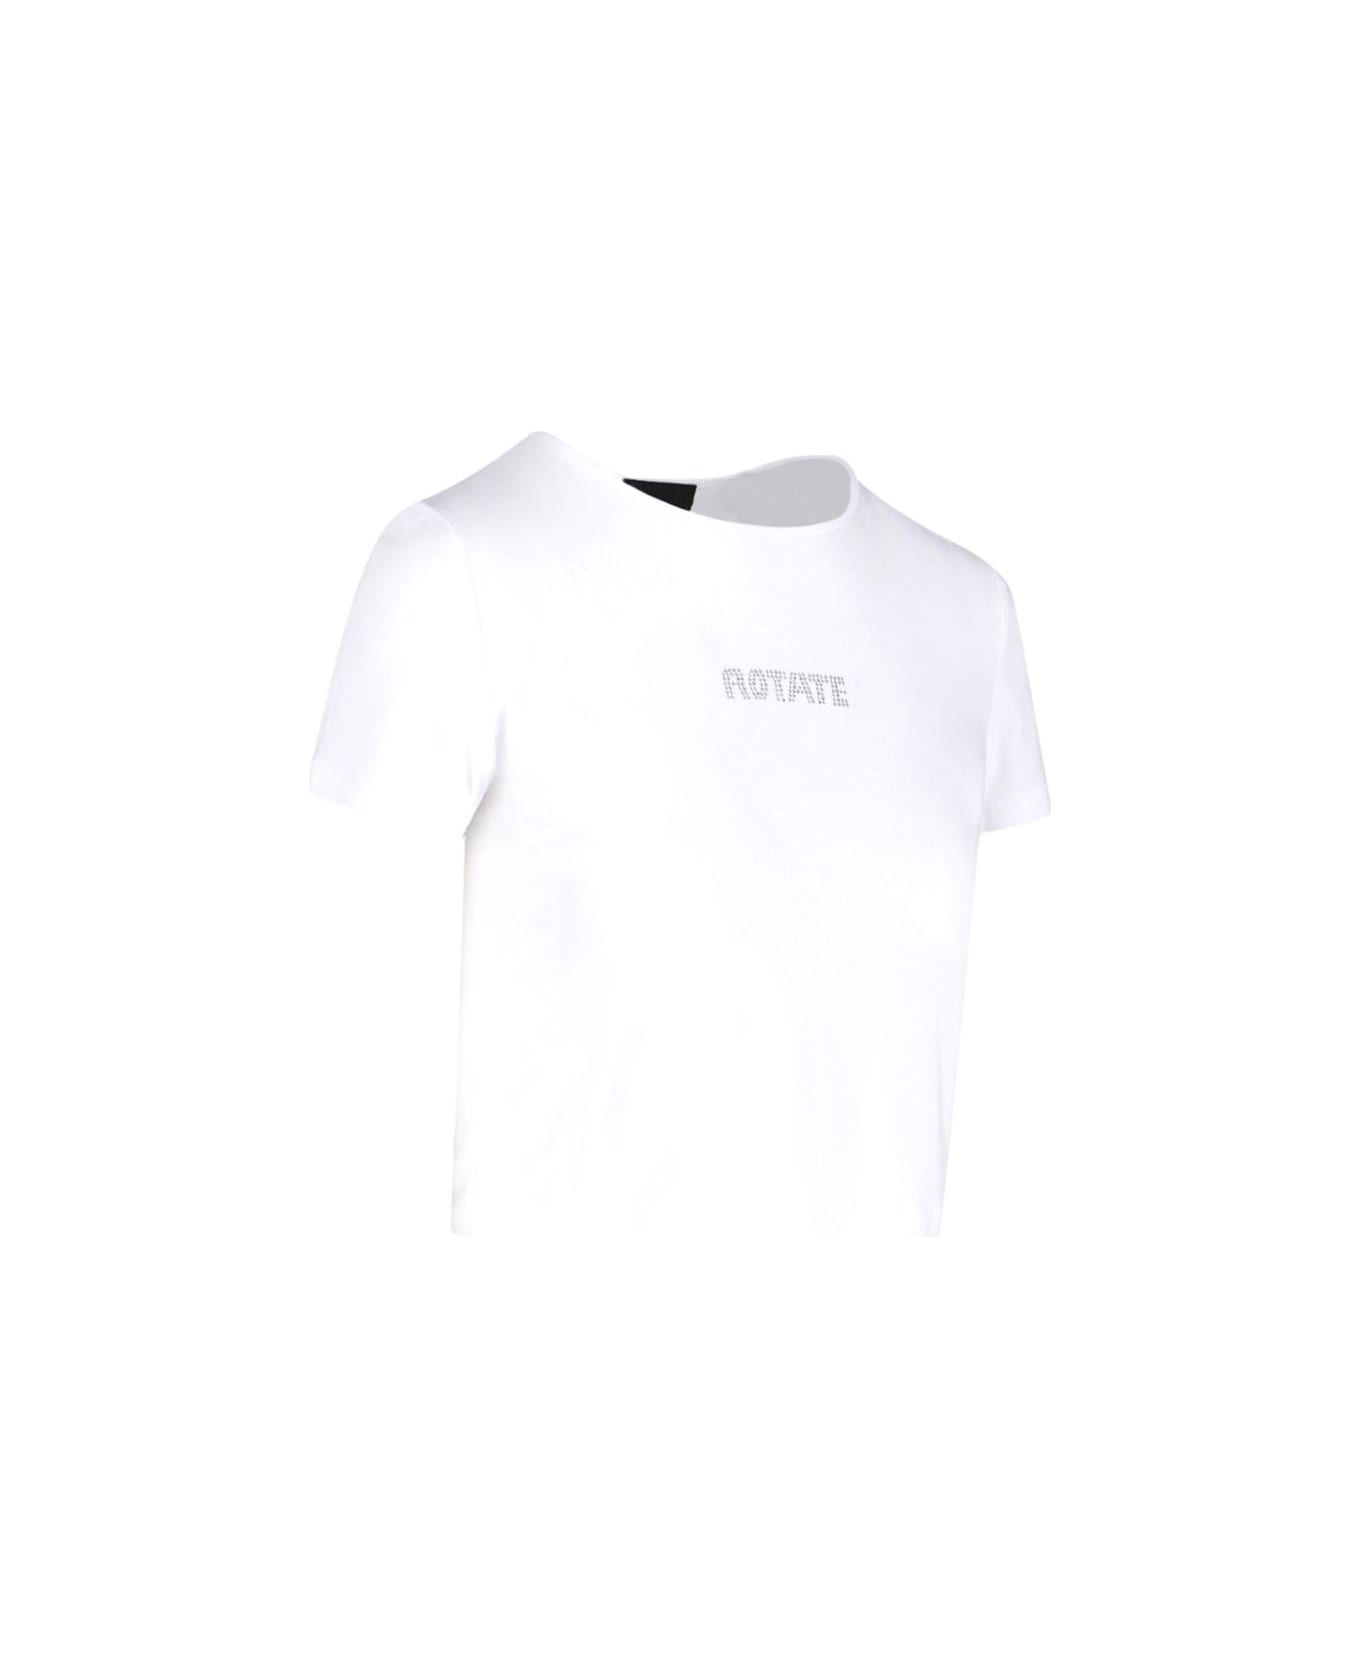 Rotate by Birger Christensen Logo Crop T-shirt - Bright White Tシャツ